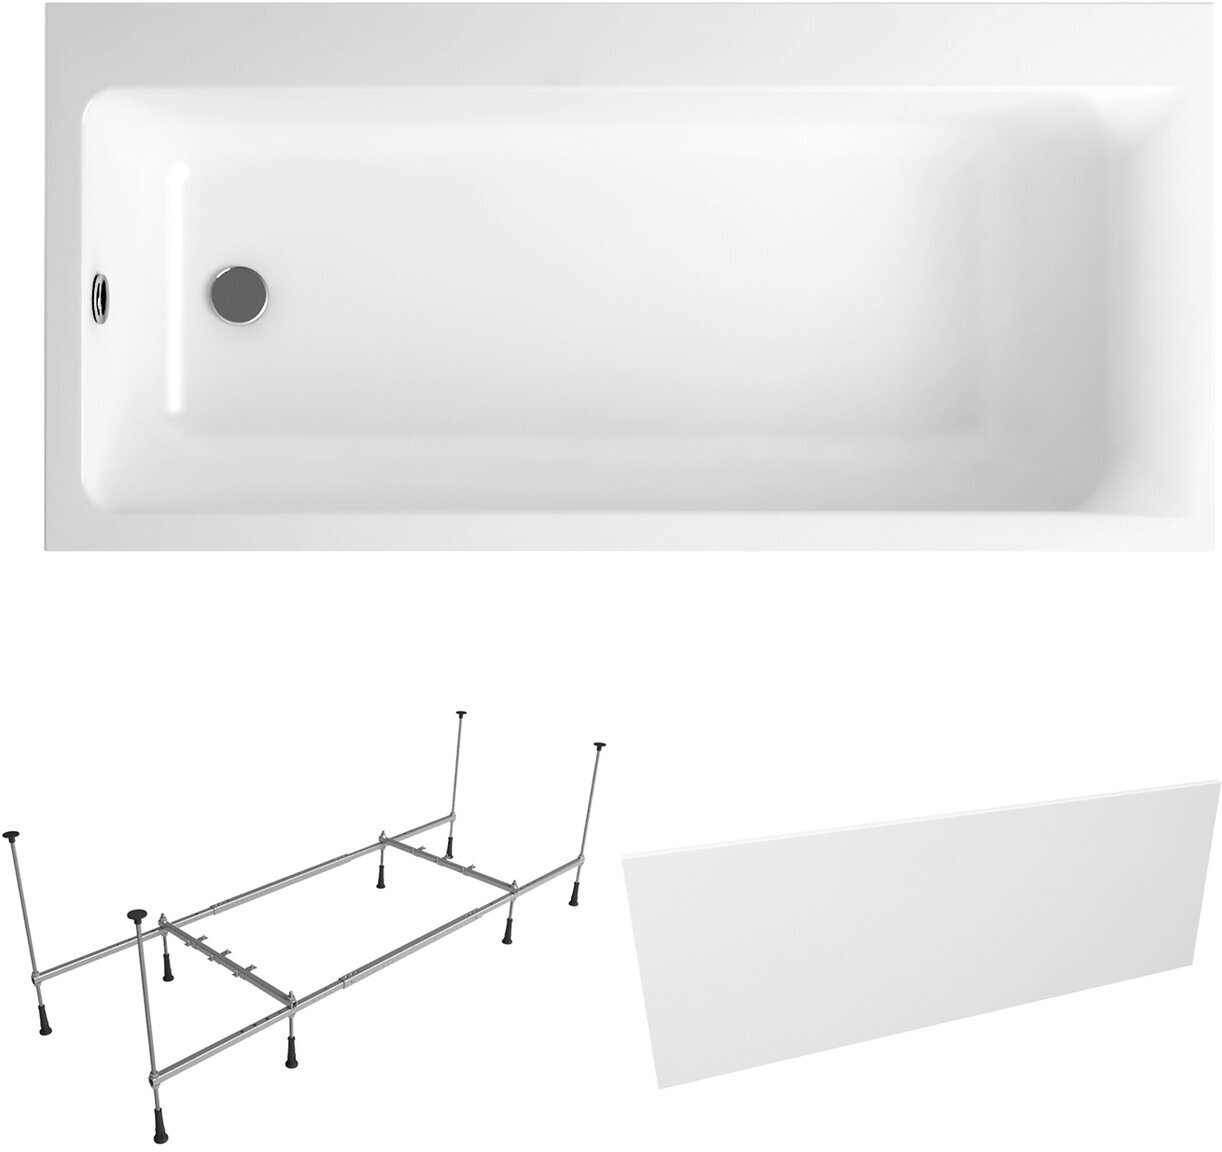 Ванна акриловая 160х80 с каркасом и экраном Lavinia Boho Catani S2-3712160L в наборе 3 в 1: ассиметричная ванна 160 х 80 см (левый разворот), металлический каркас, лицевой экран